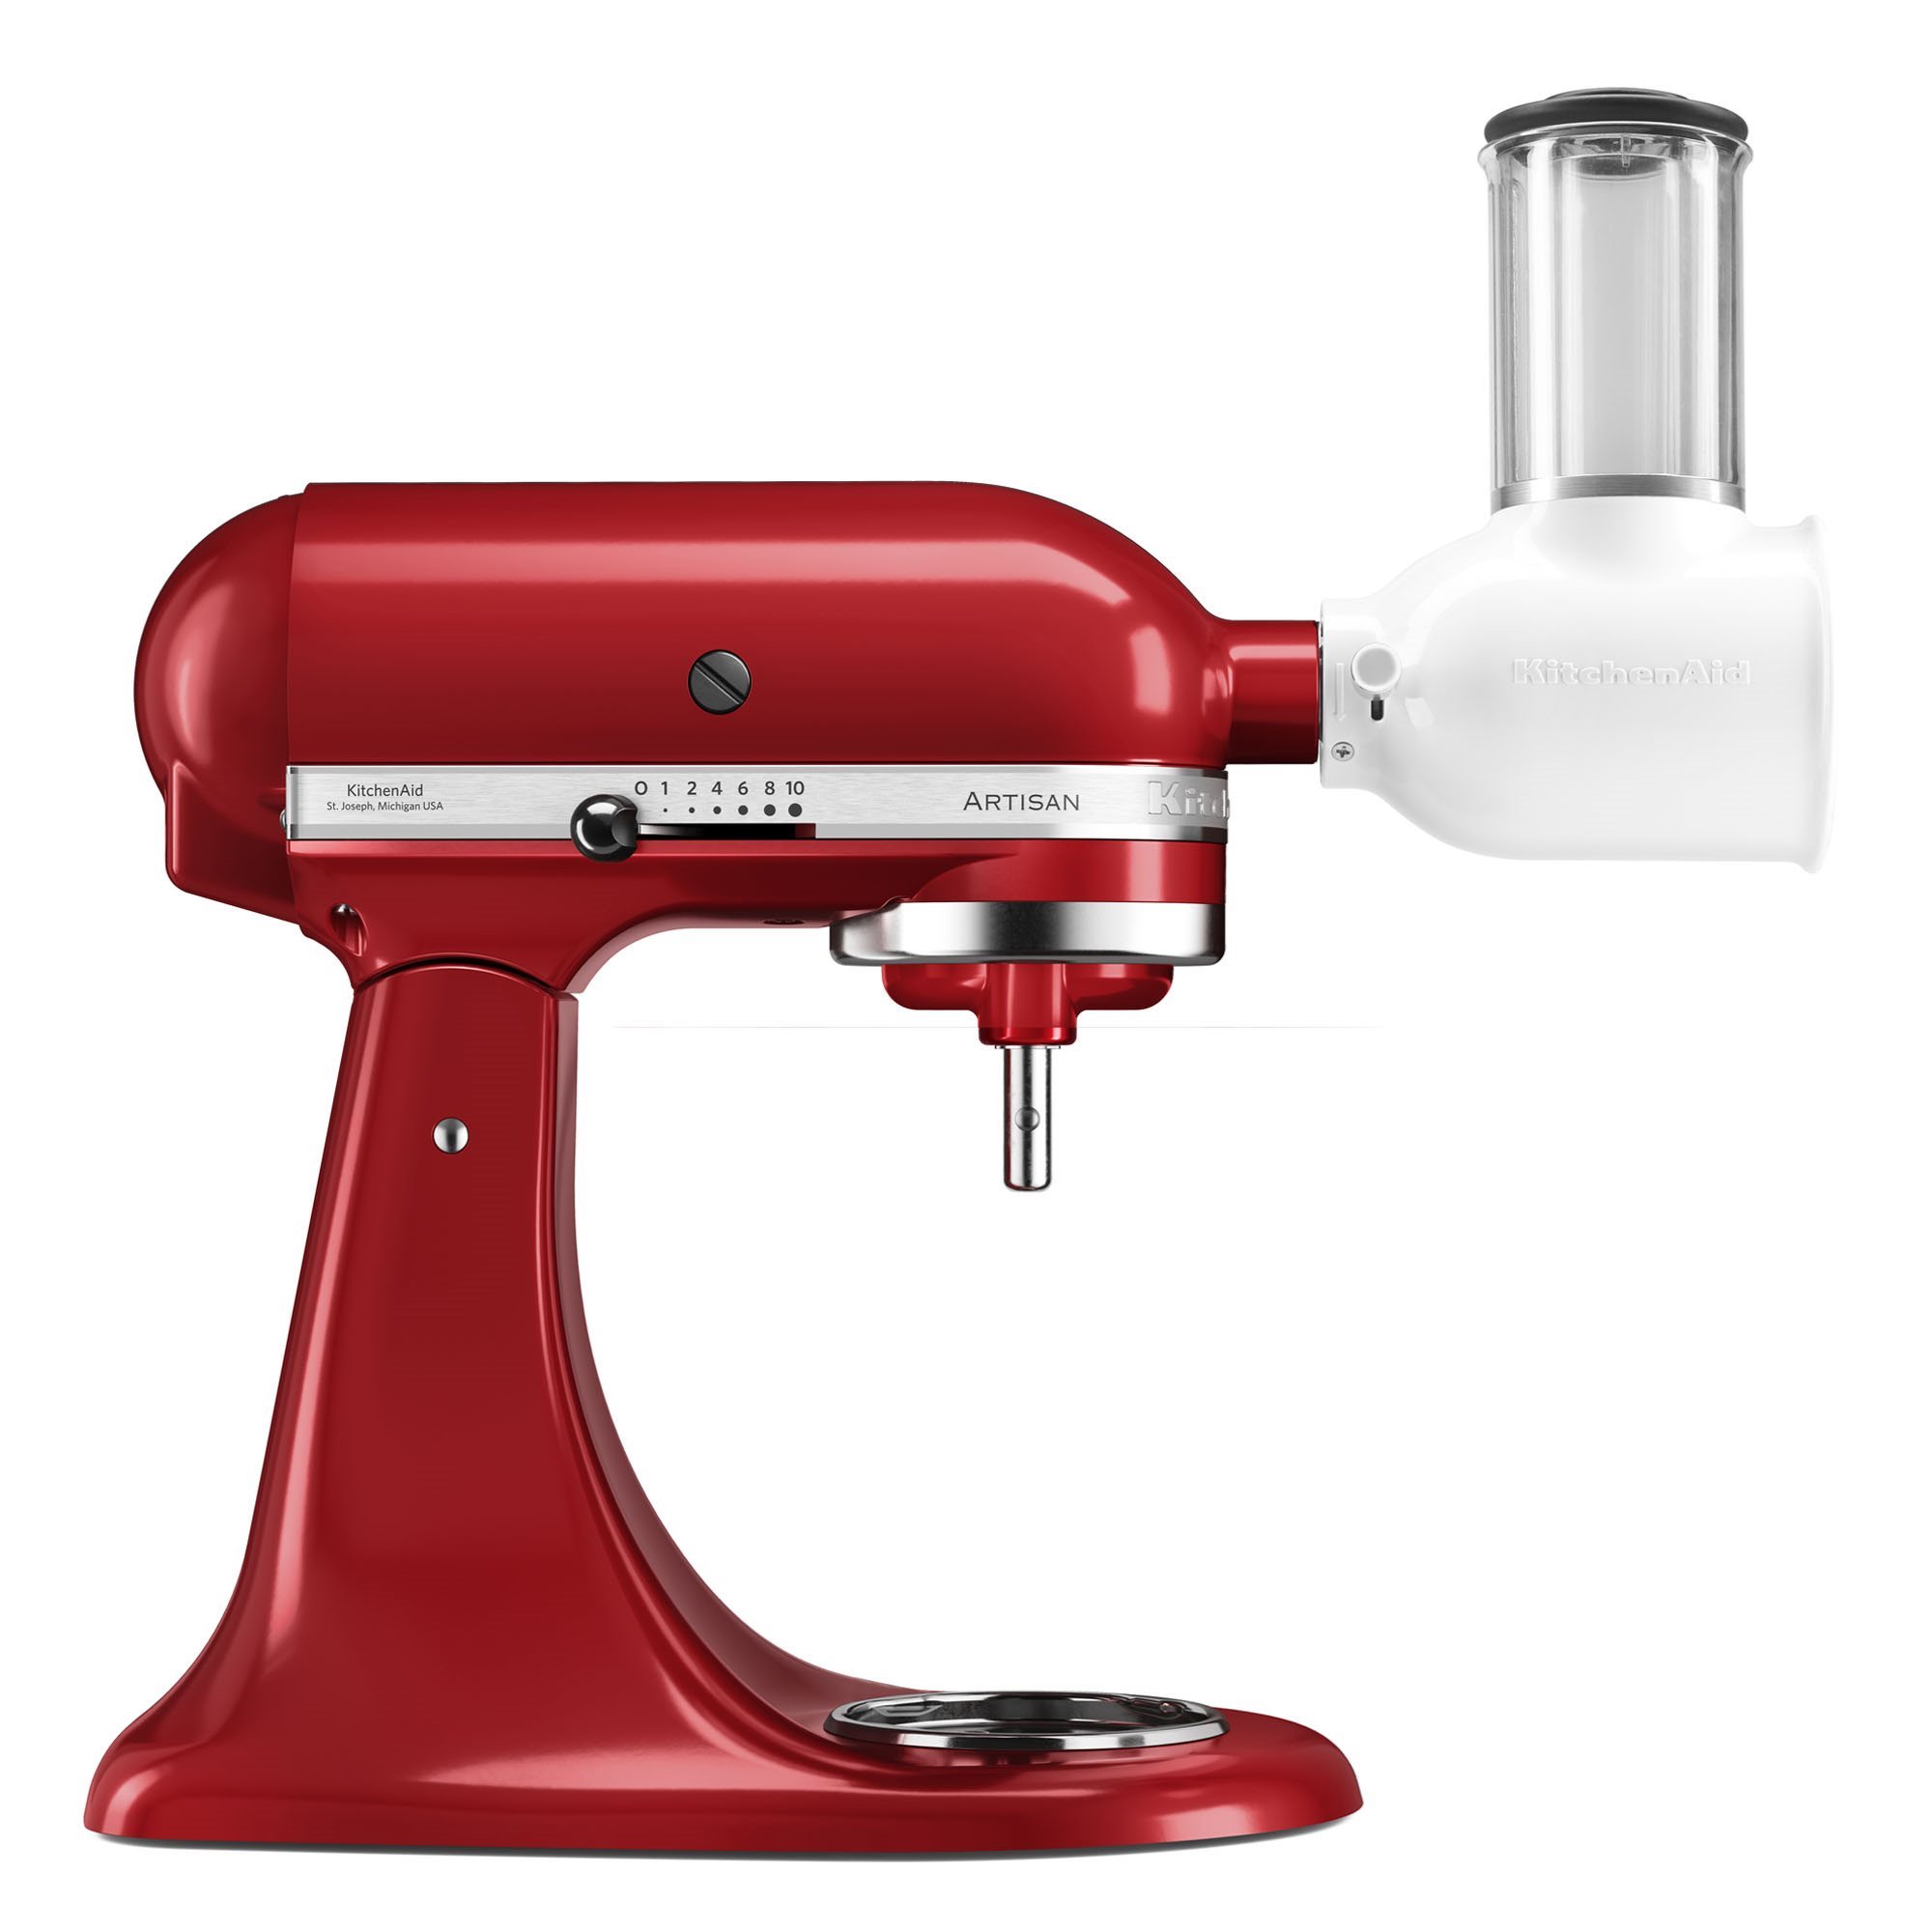 Vippeblander, Model 125, med skæreudstyr, Red - KitchenAid | KitchenShop